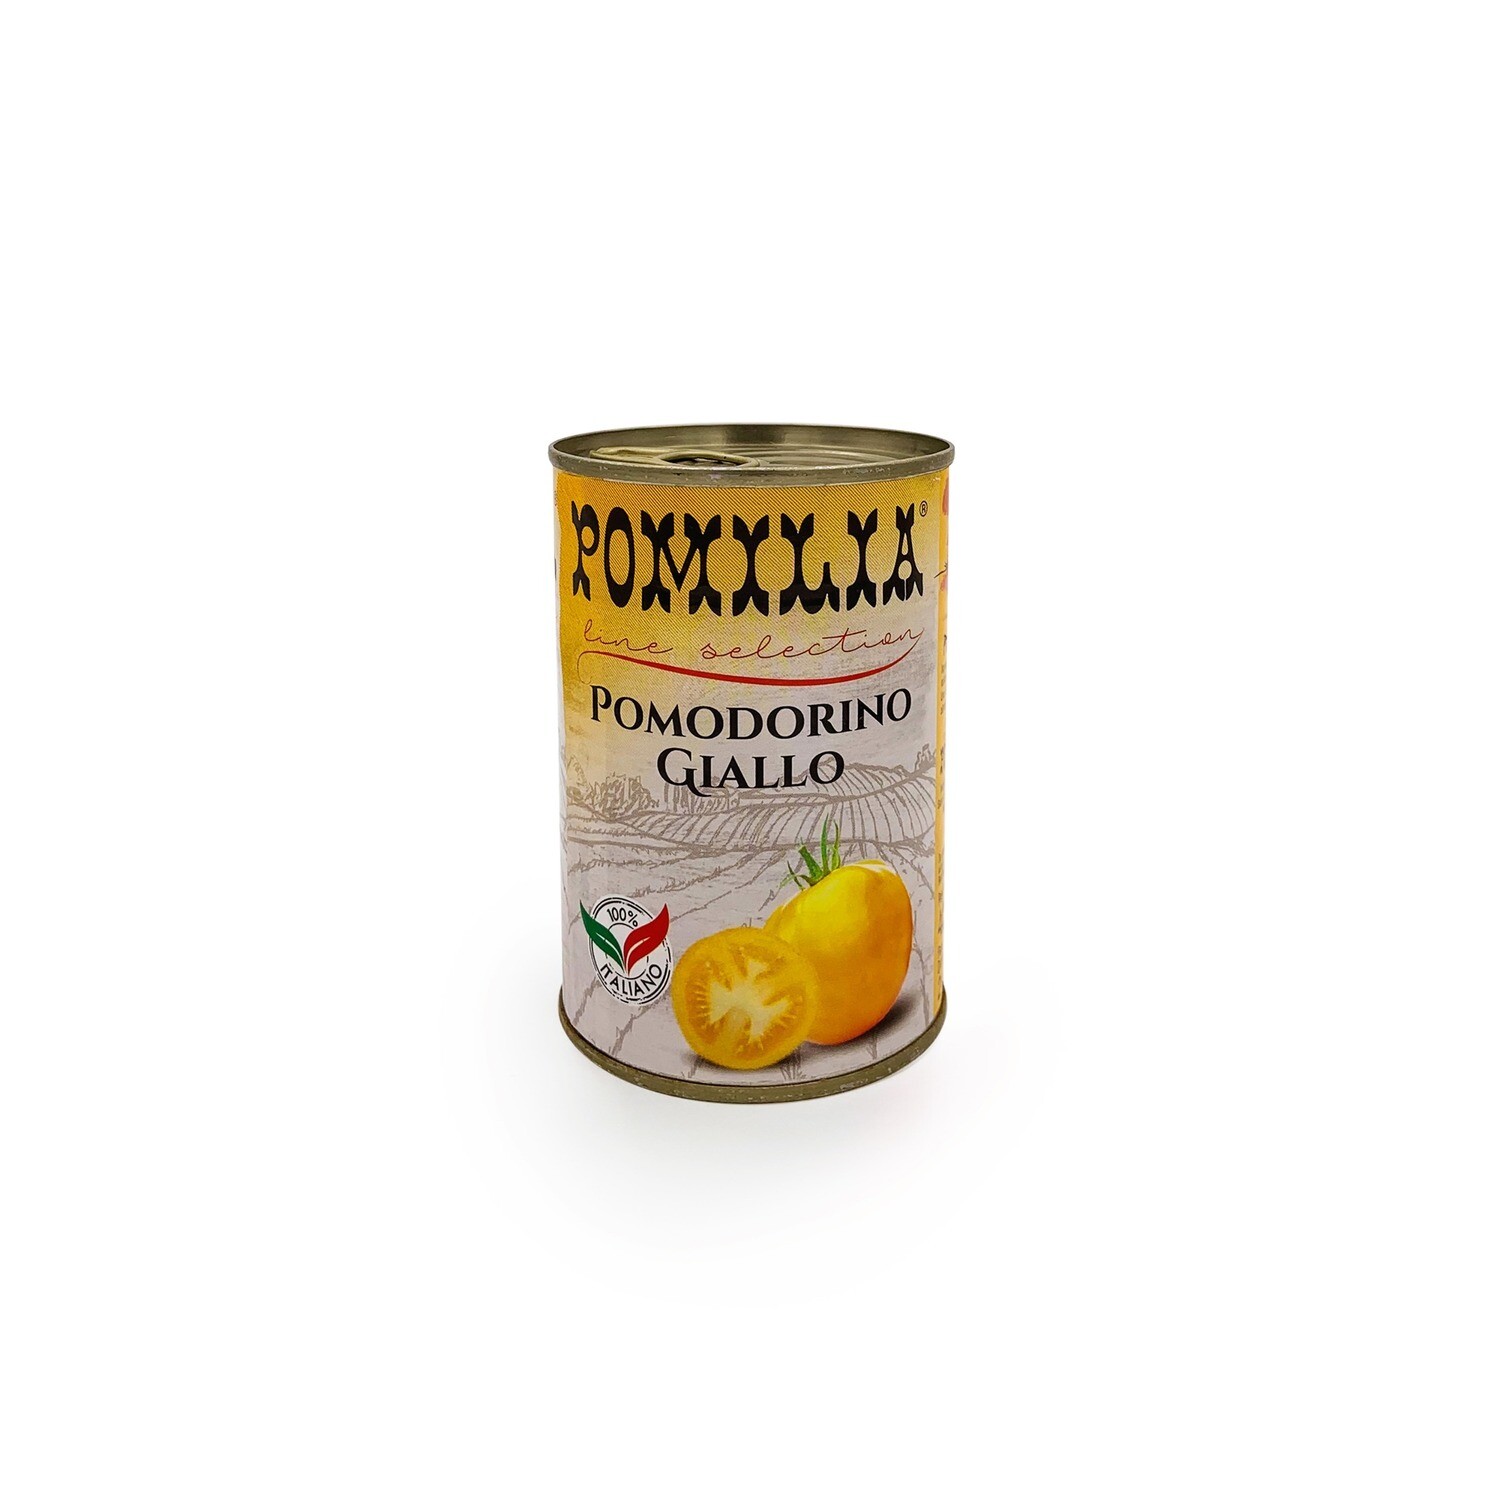 Keltaiset kirsikkatomaatit (luomu), Pomodorino Giallo, 400 g